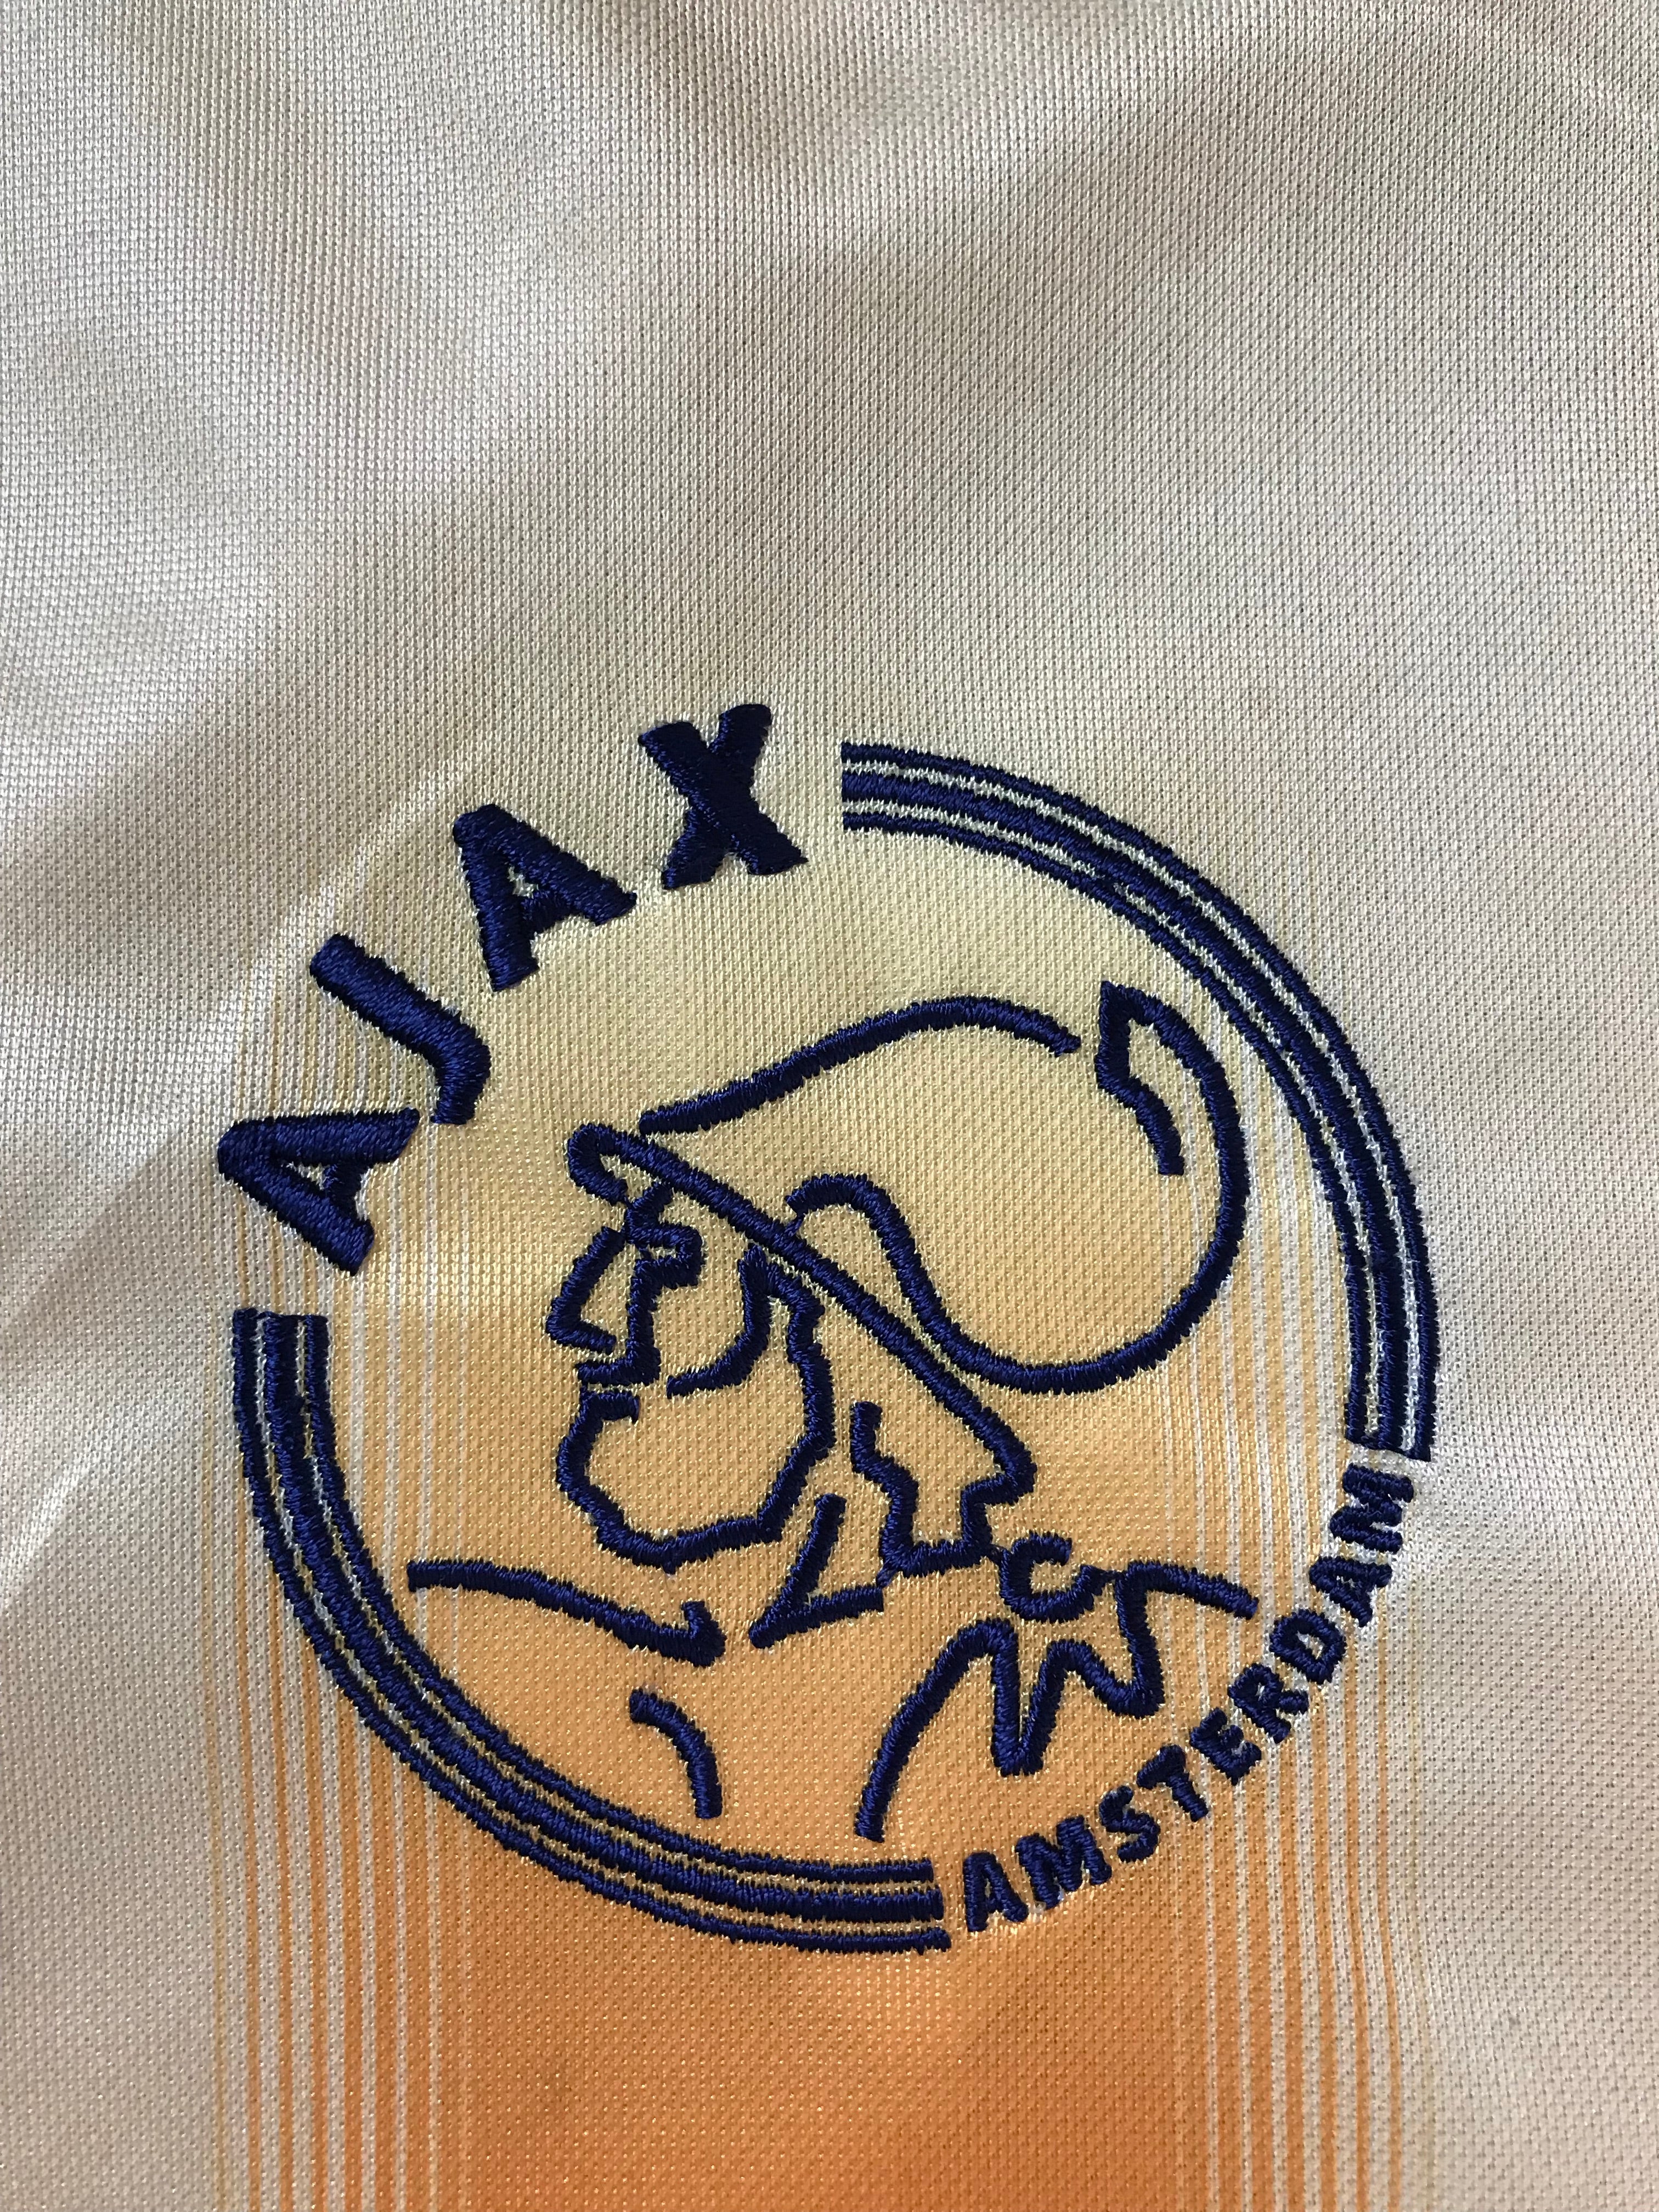 2004/05 Ajax Away Shirt (XL) 8.5/10